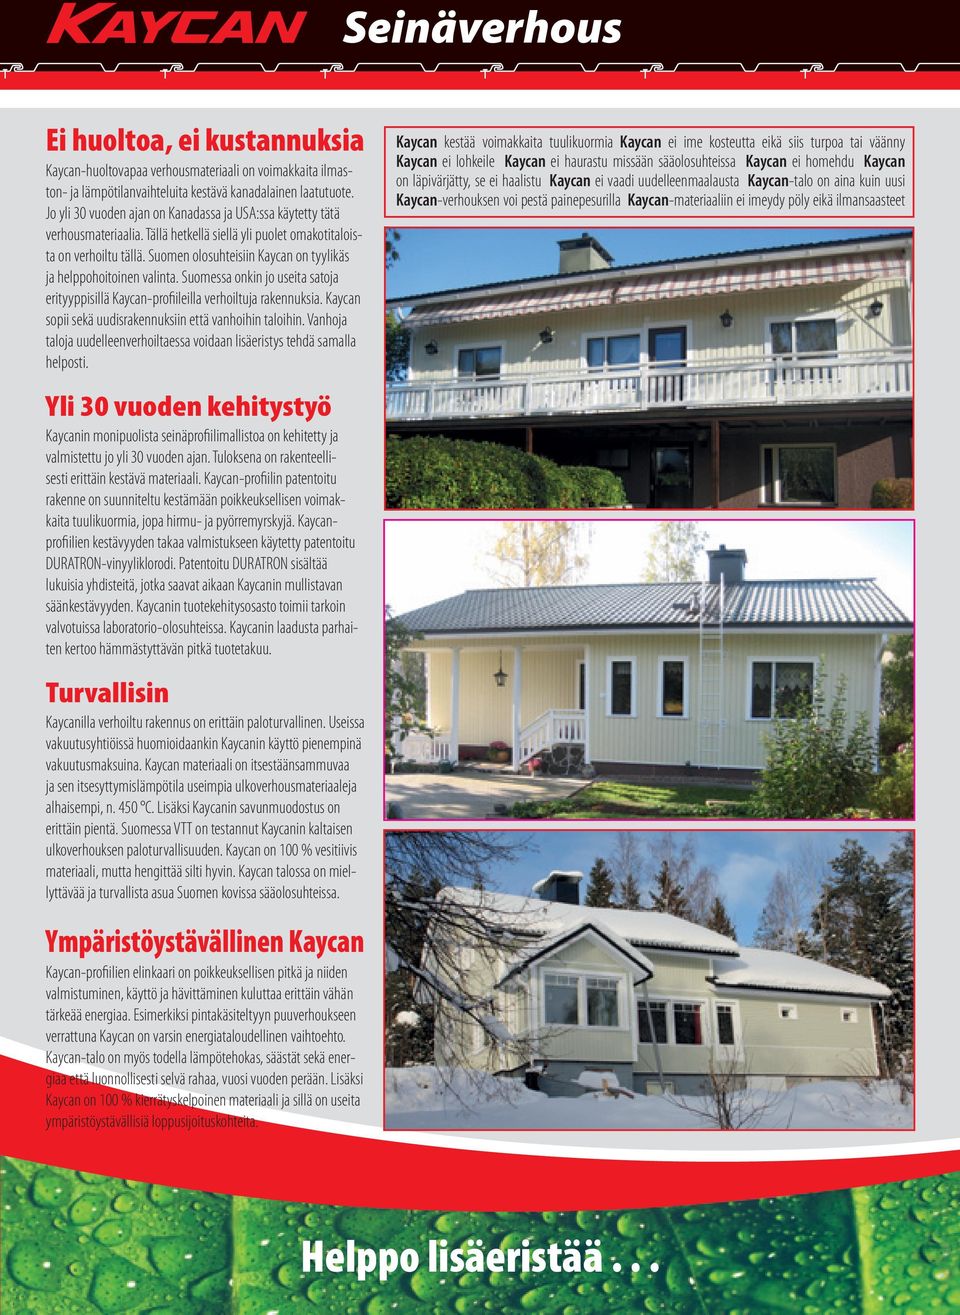 Suomen olosuhteisiin Kaycan on tyylikäs ja helppohoitoinen valinta. Suomessa onkin jo useita satoja erityyppisillä Kaycan-profiileilla verhoiltuja rakennuksia.